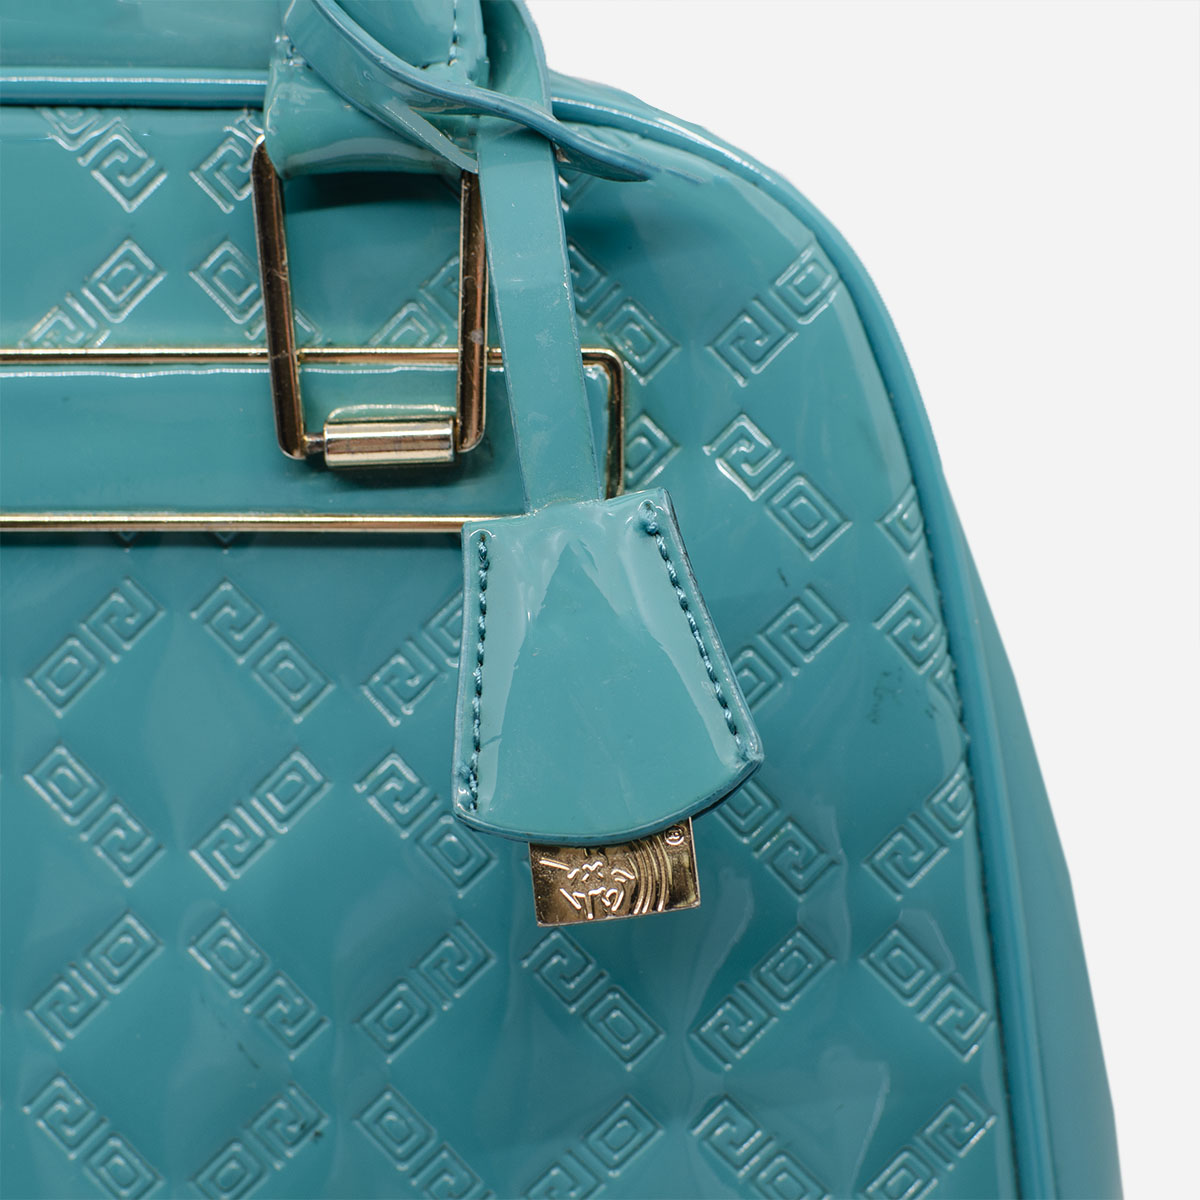 vintage turquoise handbag